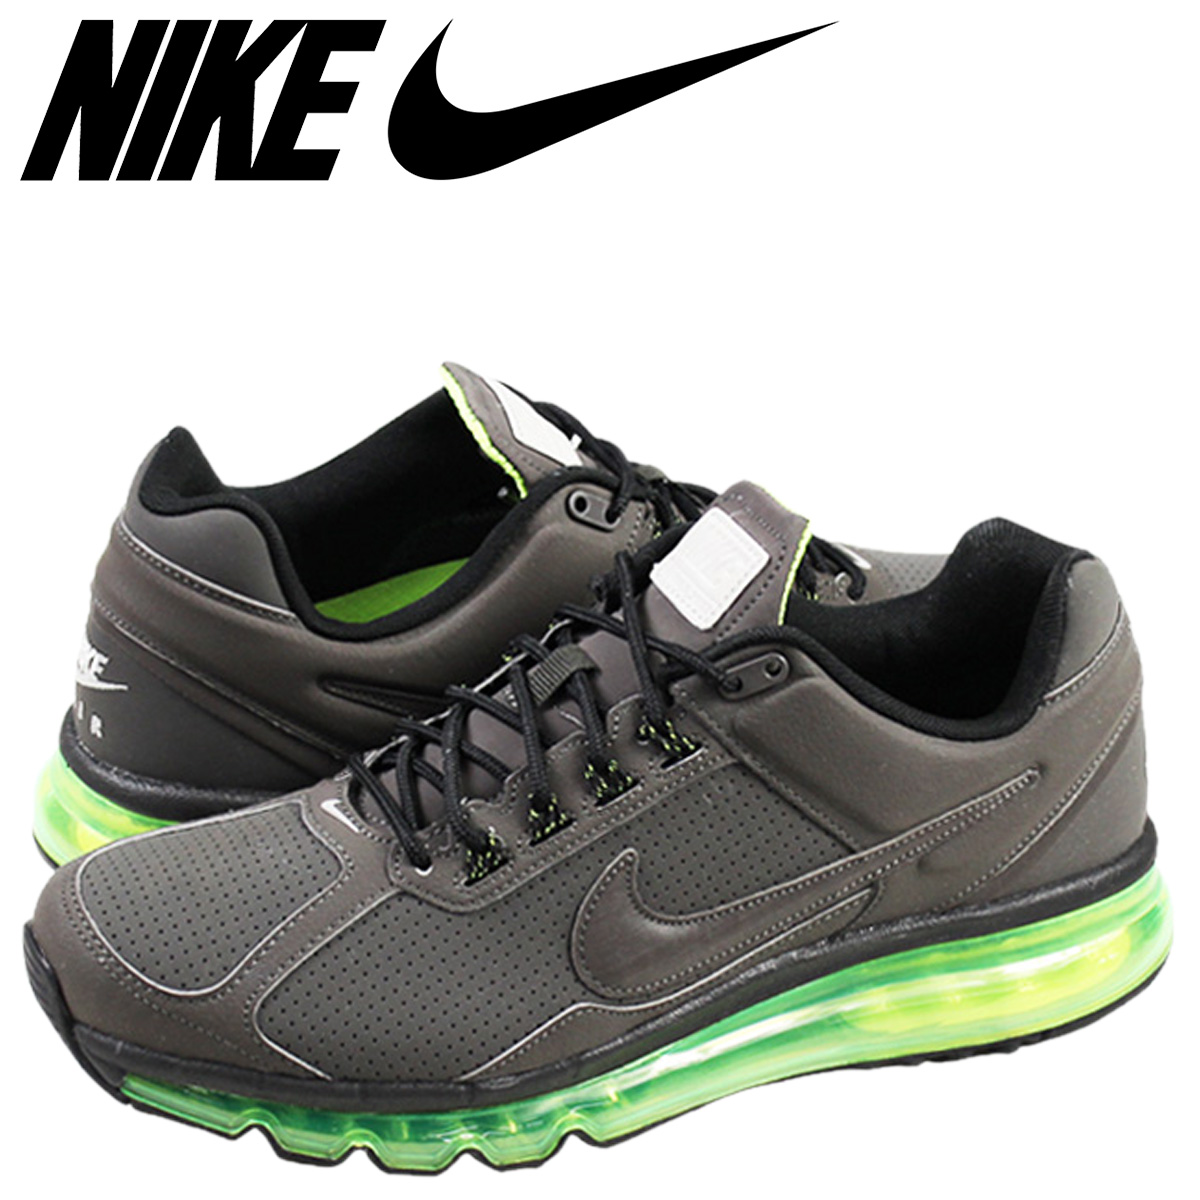 nike shoes air max 2013